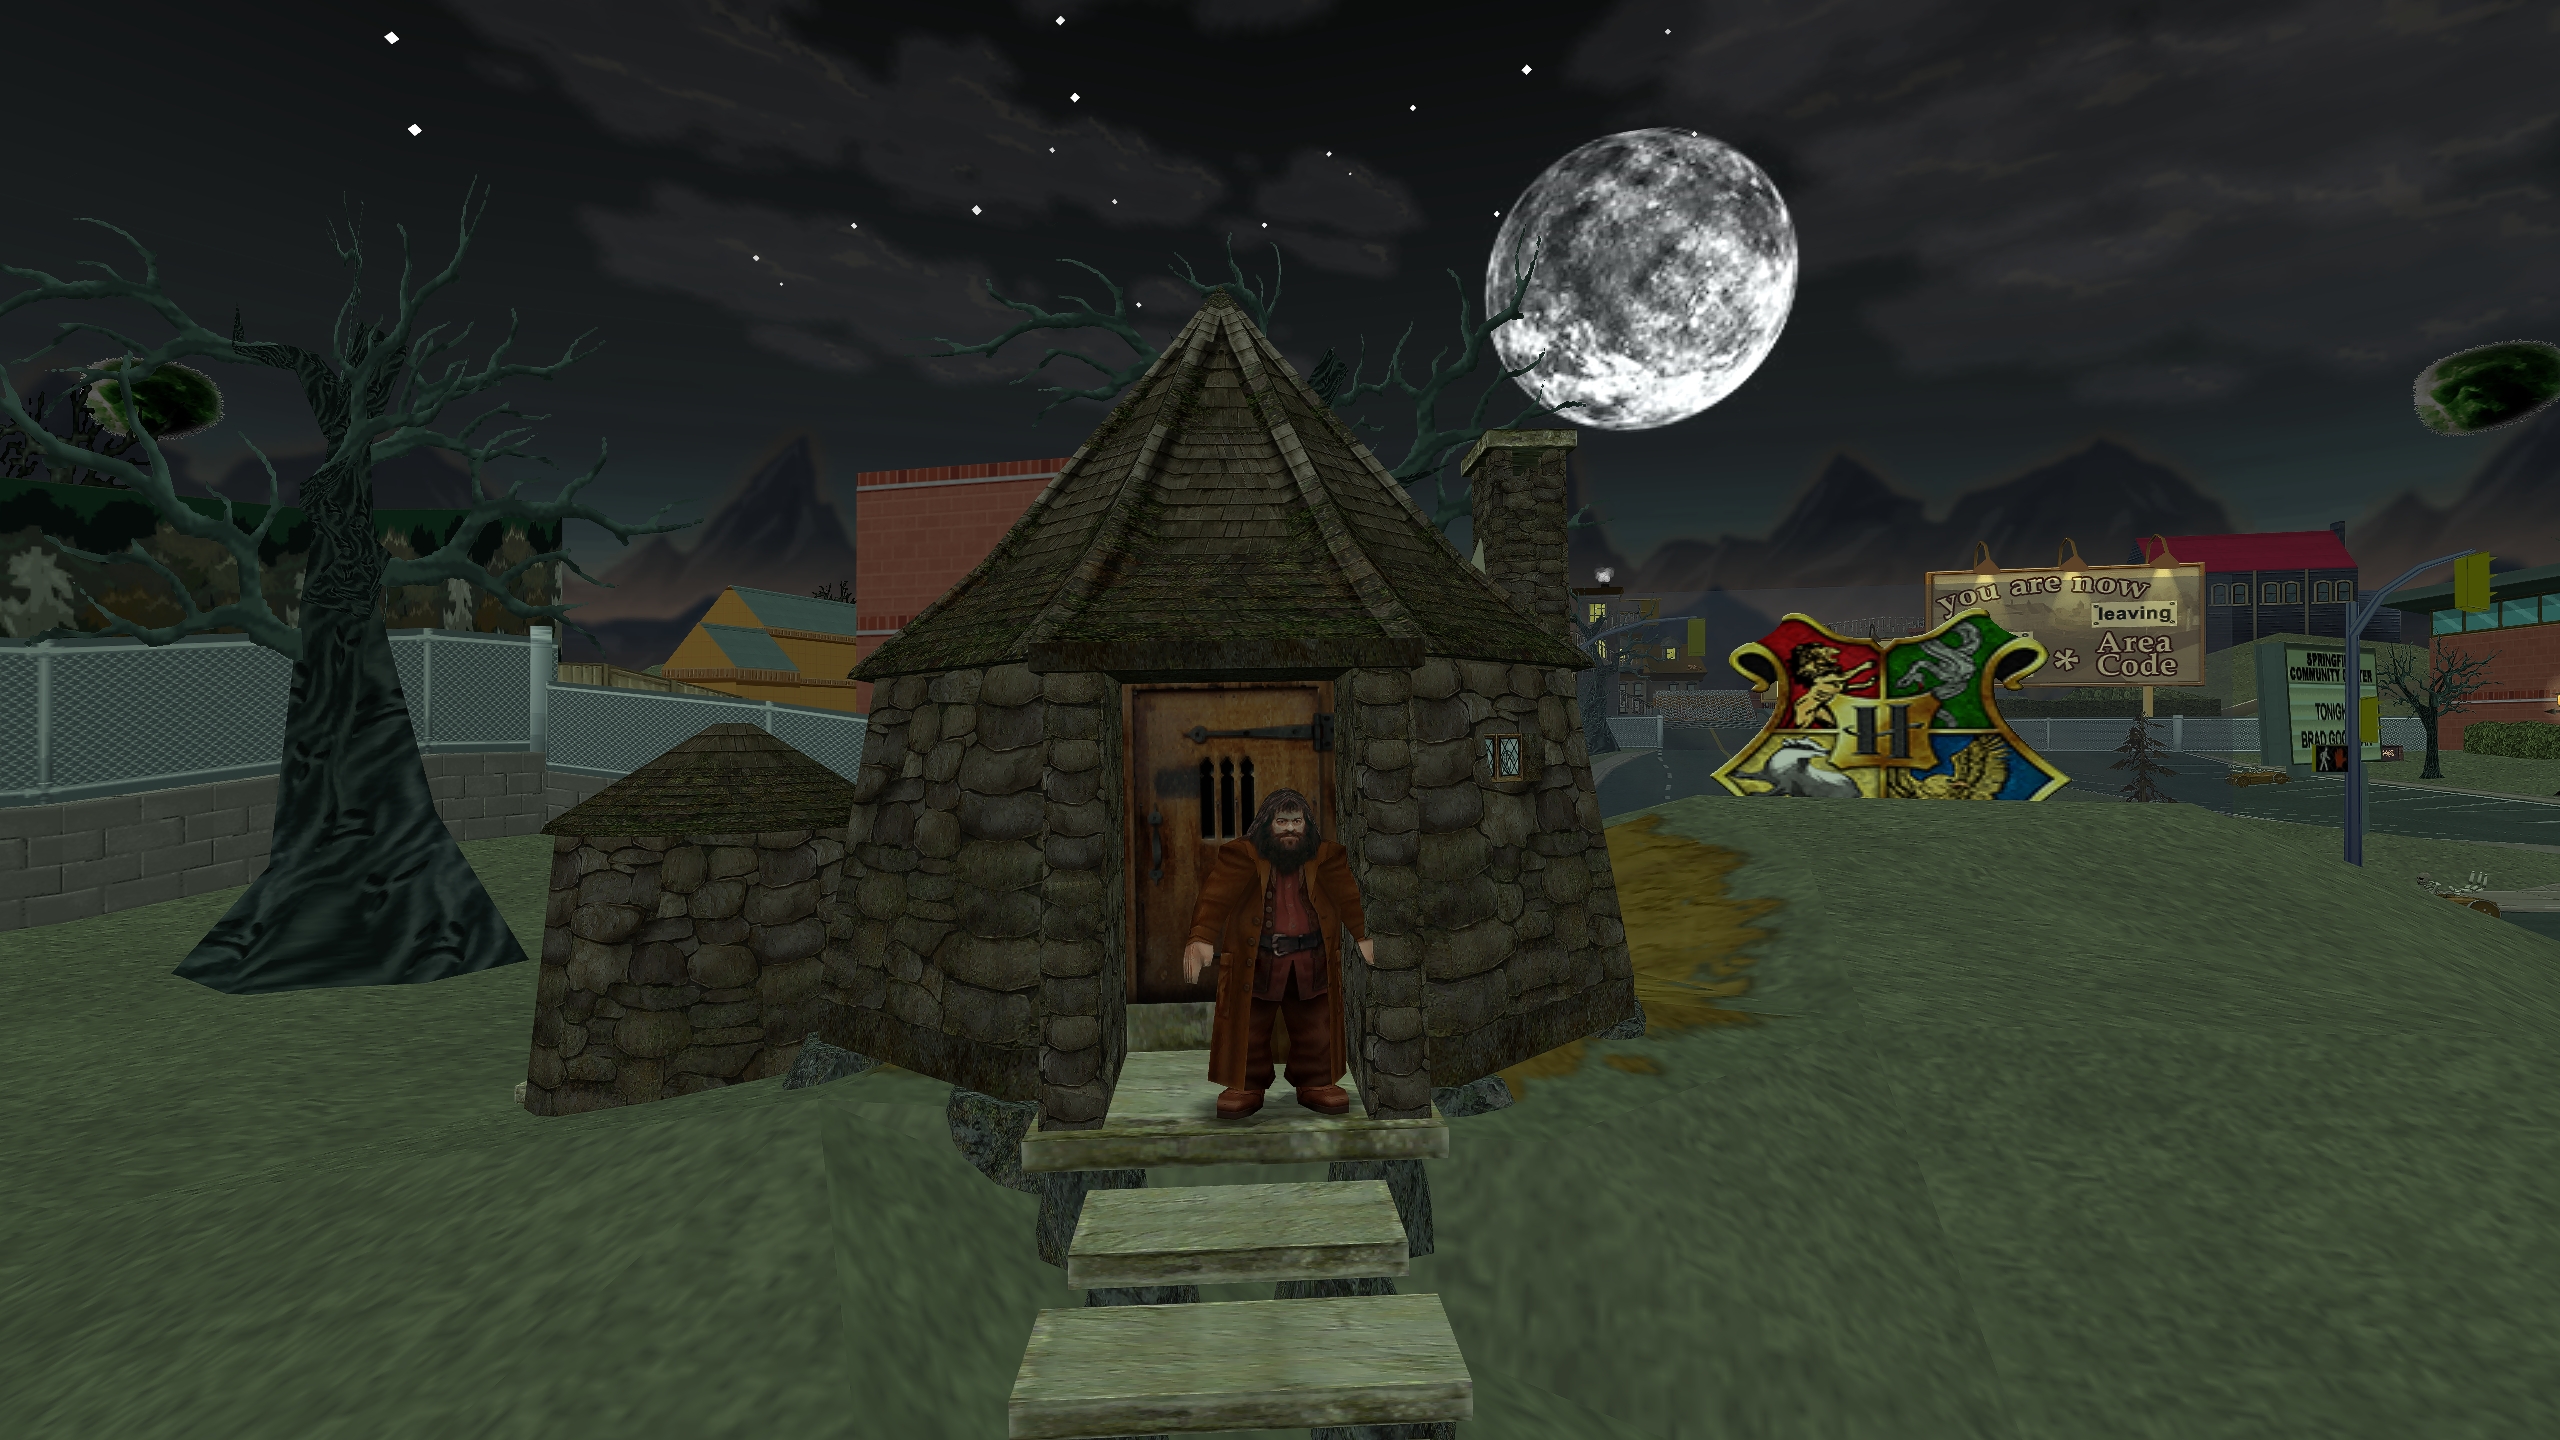 Hagrid and his hut